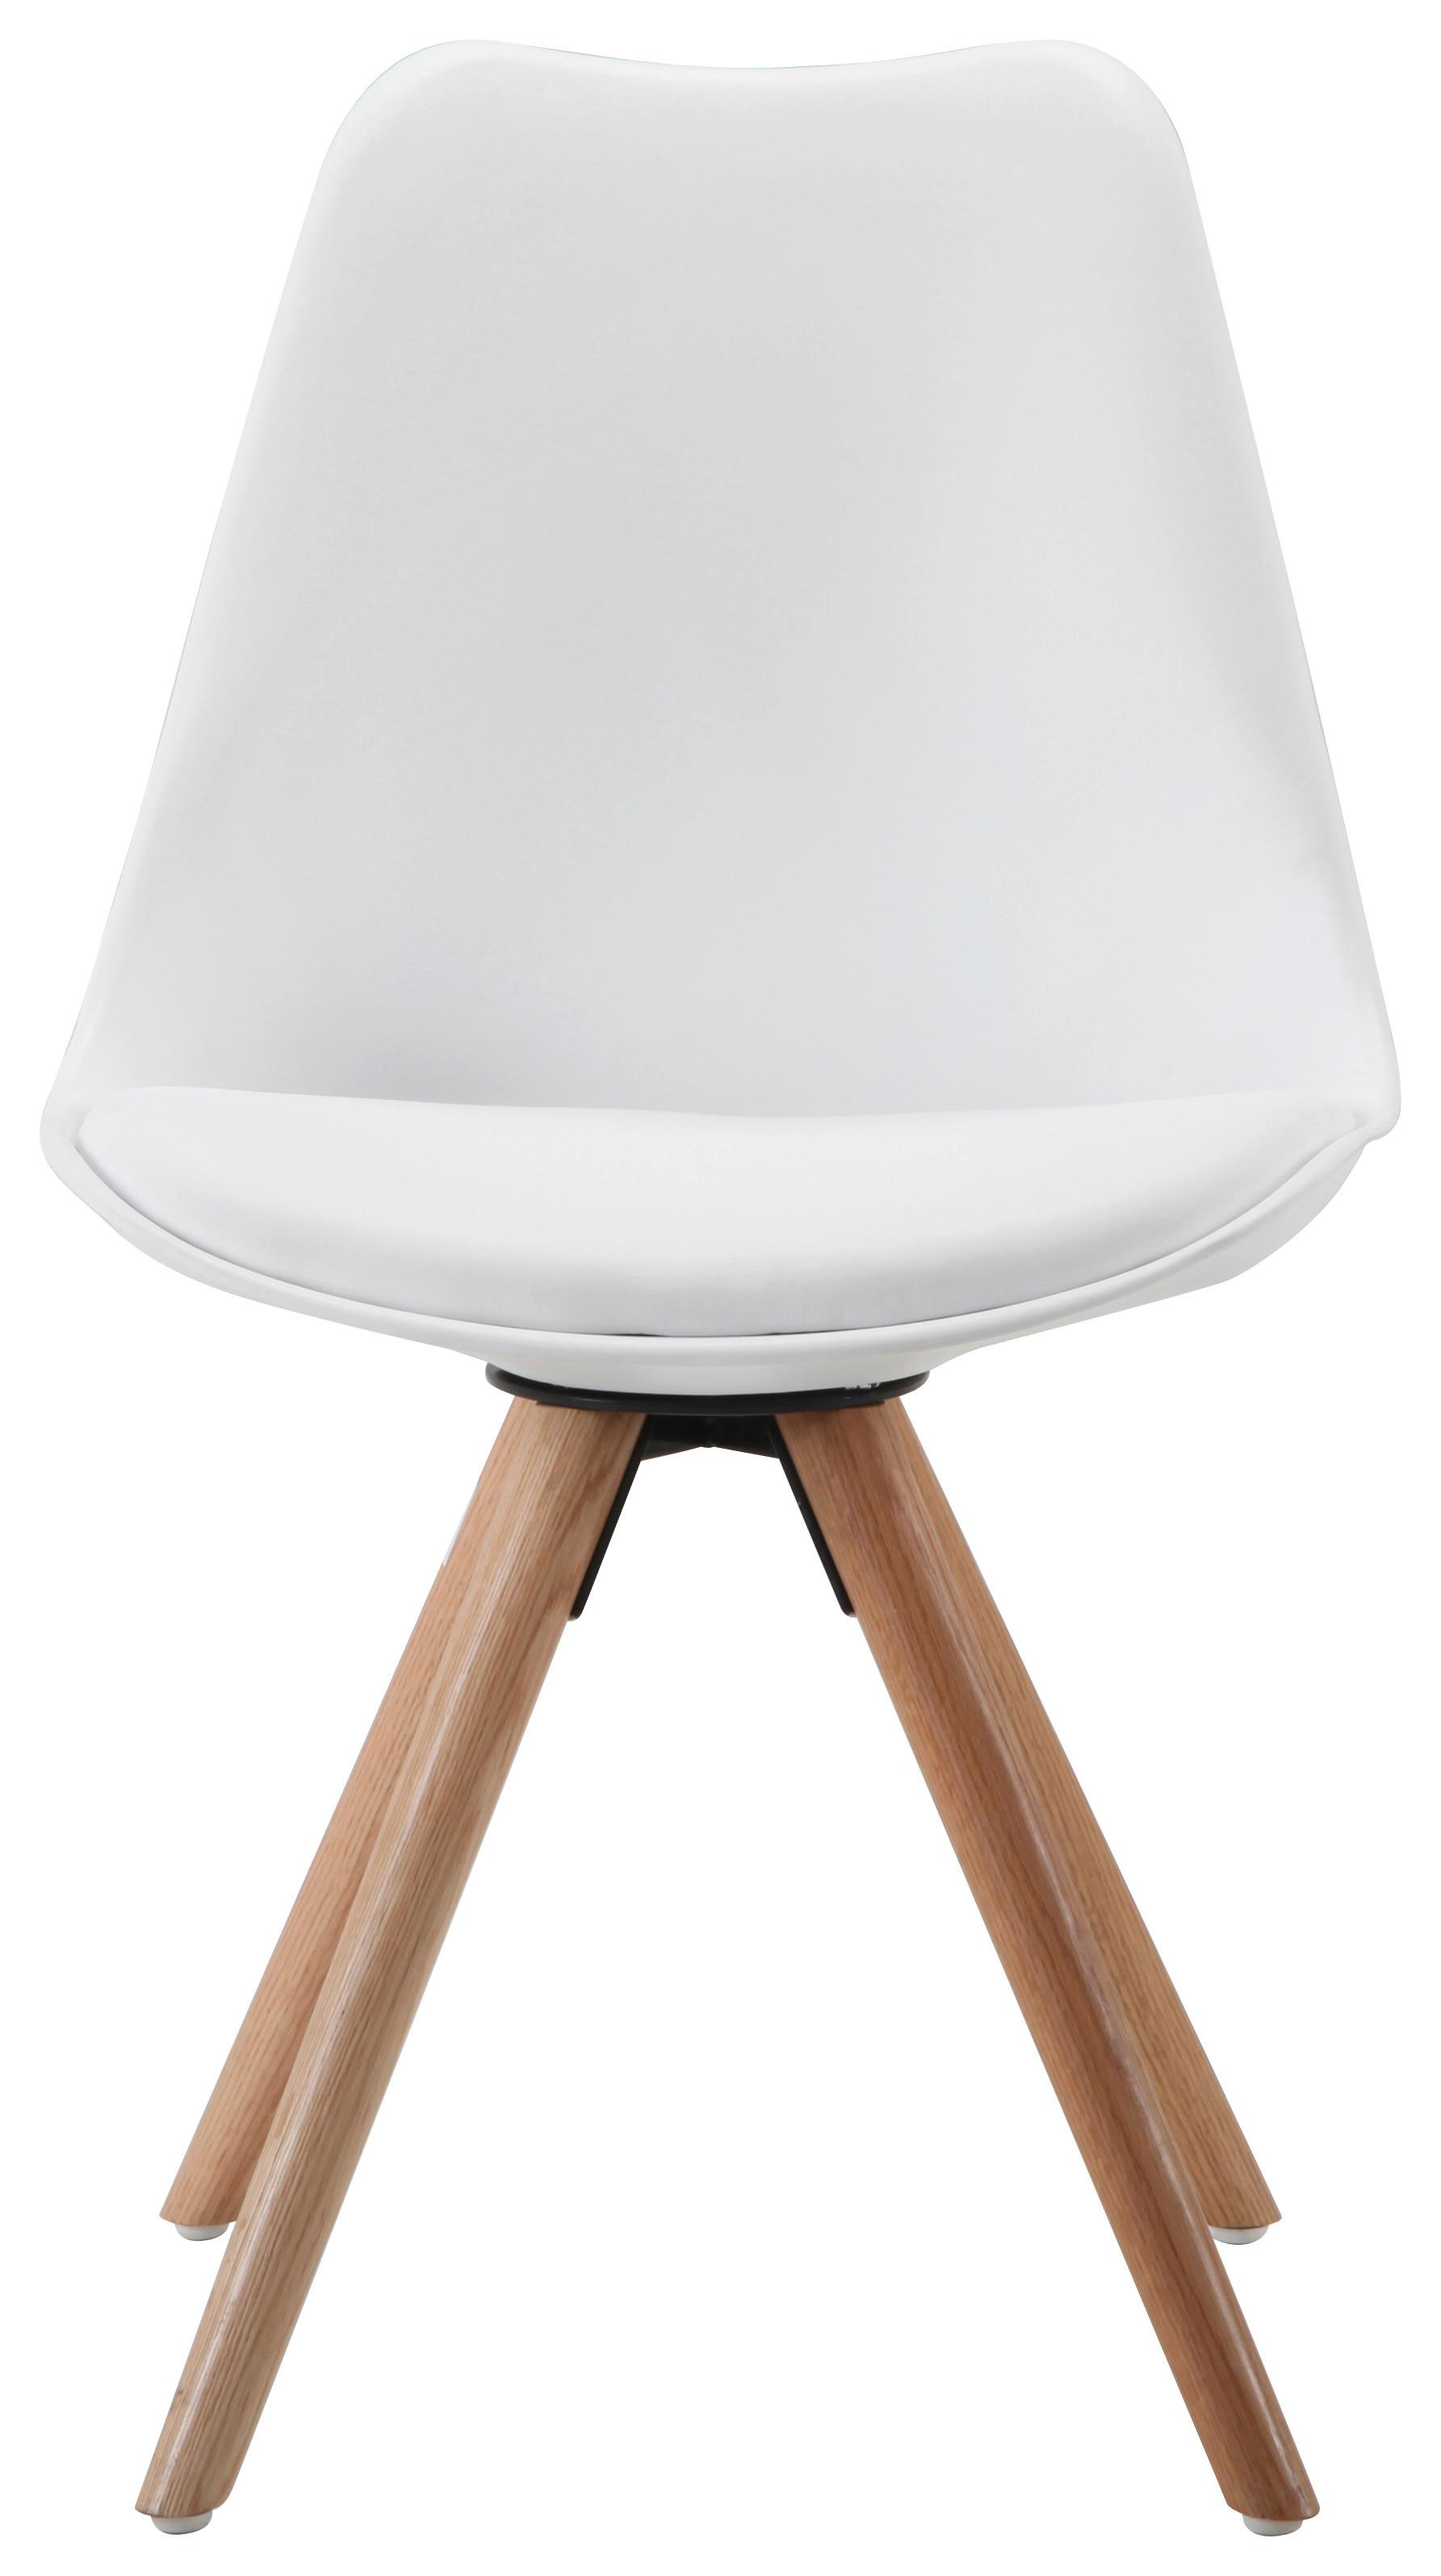 Židle Lilly - bílá/barvy dubu, Moderní, dřevo/plast (48/81/57cm) - Modern Living